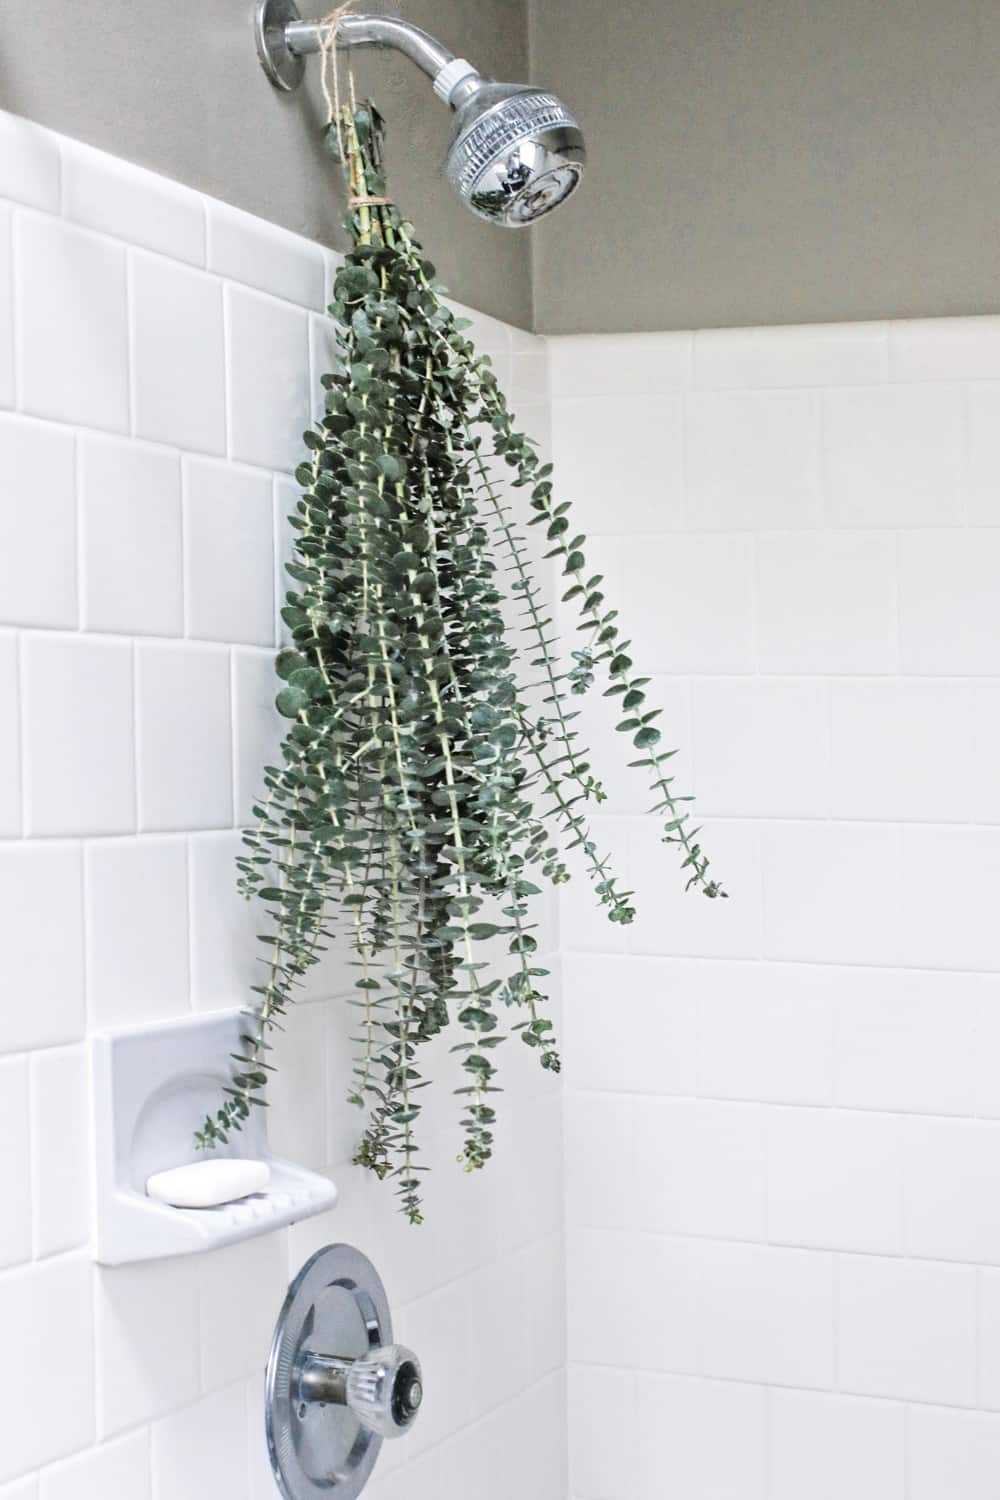 Comment faire une douche d'eucalyptus pour nettoyer les sinus